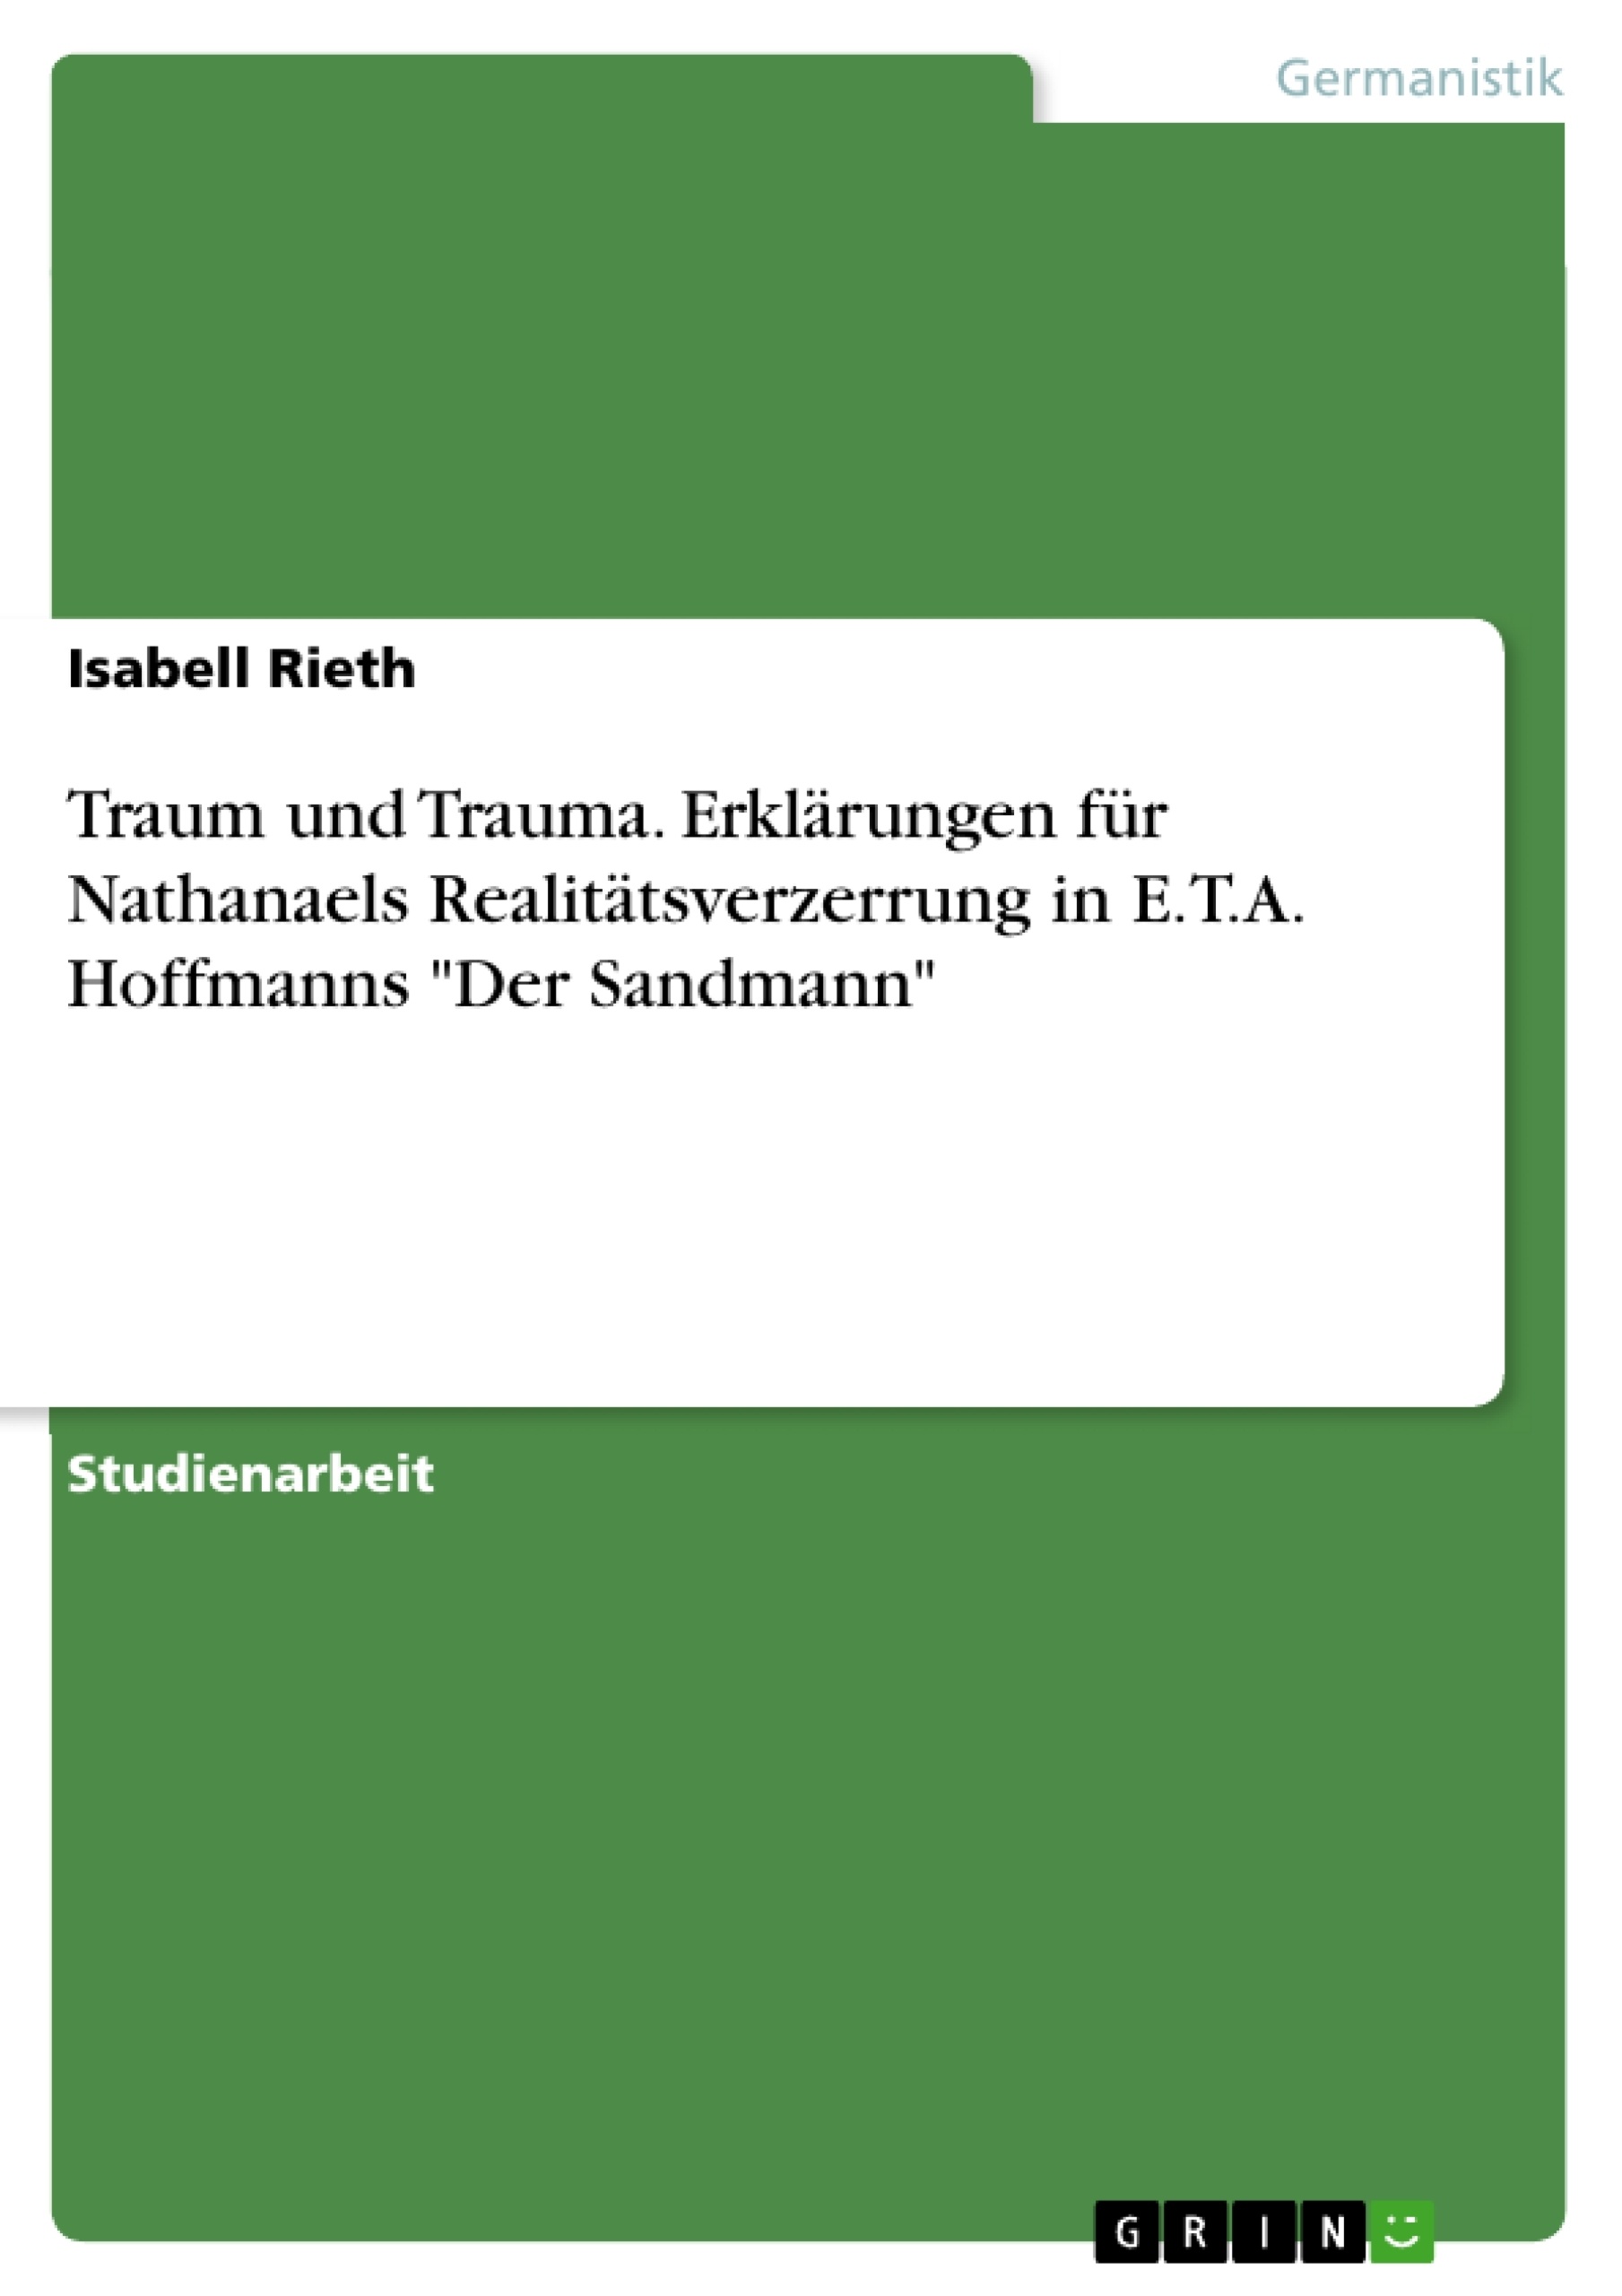 Titre: Traum und Trauma. Erklärungen für Nathanaels Realitätsverzerrung in E.T.A. Hoffmanns "Der Sandmann"